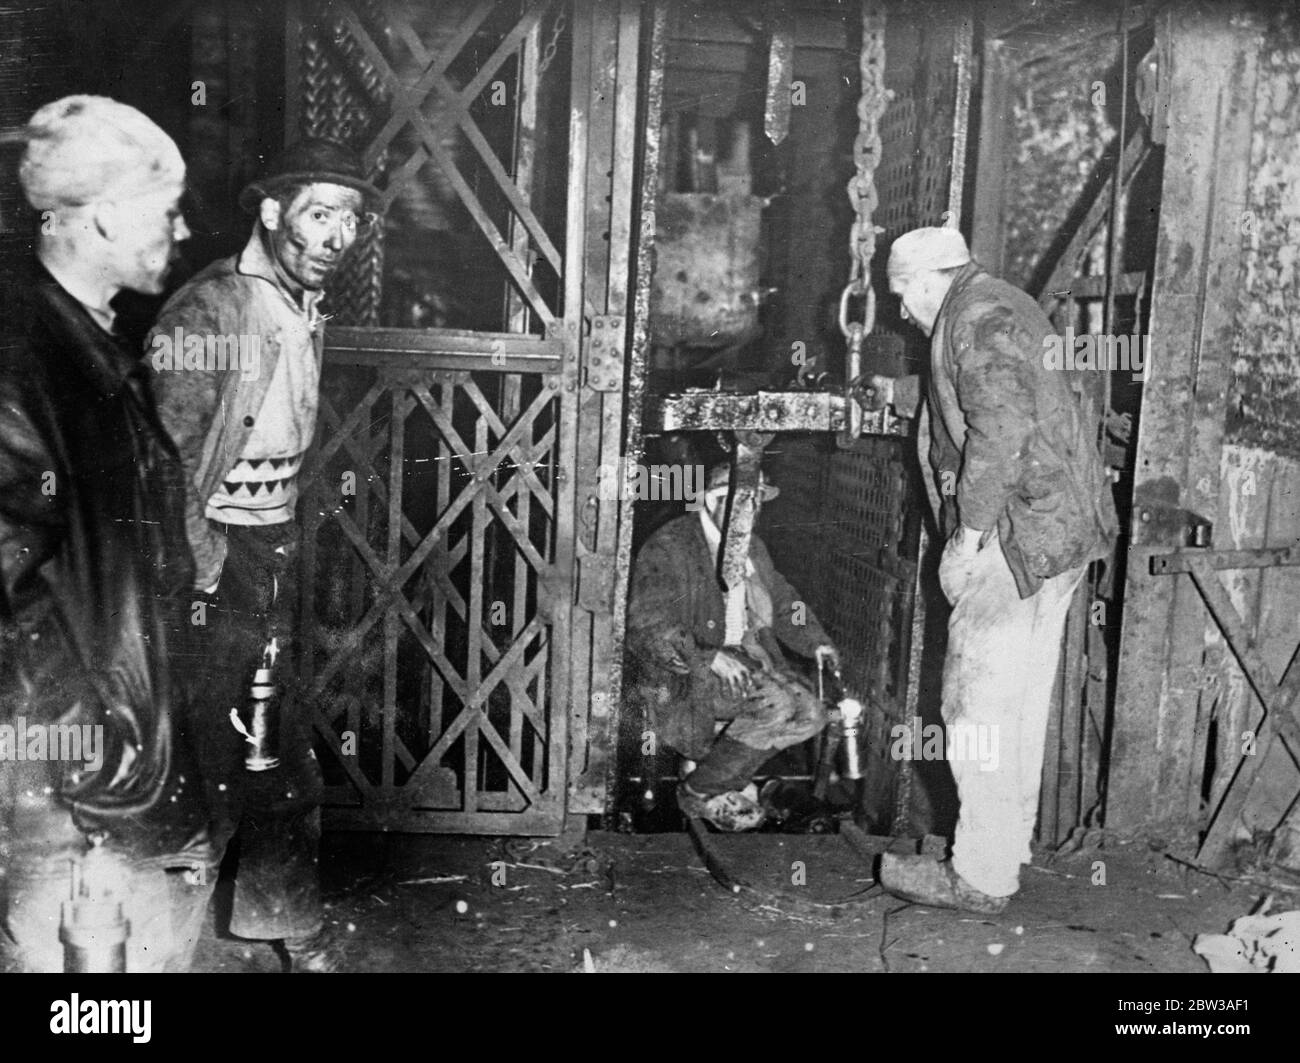 43 in belgischen Minen Katastrophe zu sterben. Dreiundvierzig Männer entrohten, als eine katastrophale Explosion in einer Kohlemine in der Nähe von Paturages, Belgien, auftrat. Die Explosion ereignete sich in einer Galerie 2 , 700 Meter unter der Erde . Nach dem Unfall wurde die Mine versiegelt. Foto zeigt, die ein Opfer der Explosion. 17 Mai 1934 . Stockfoto